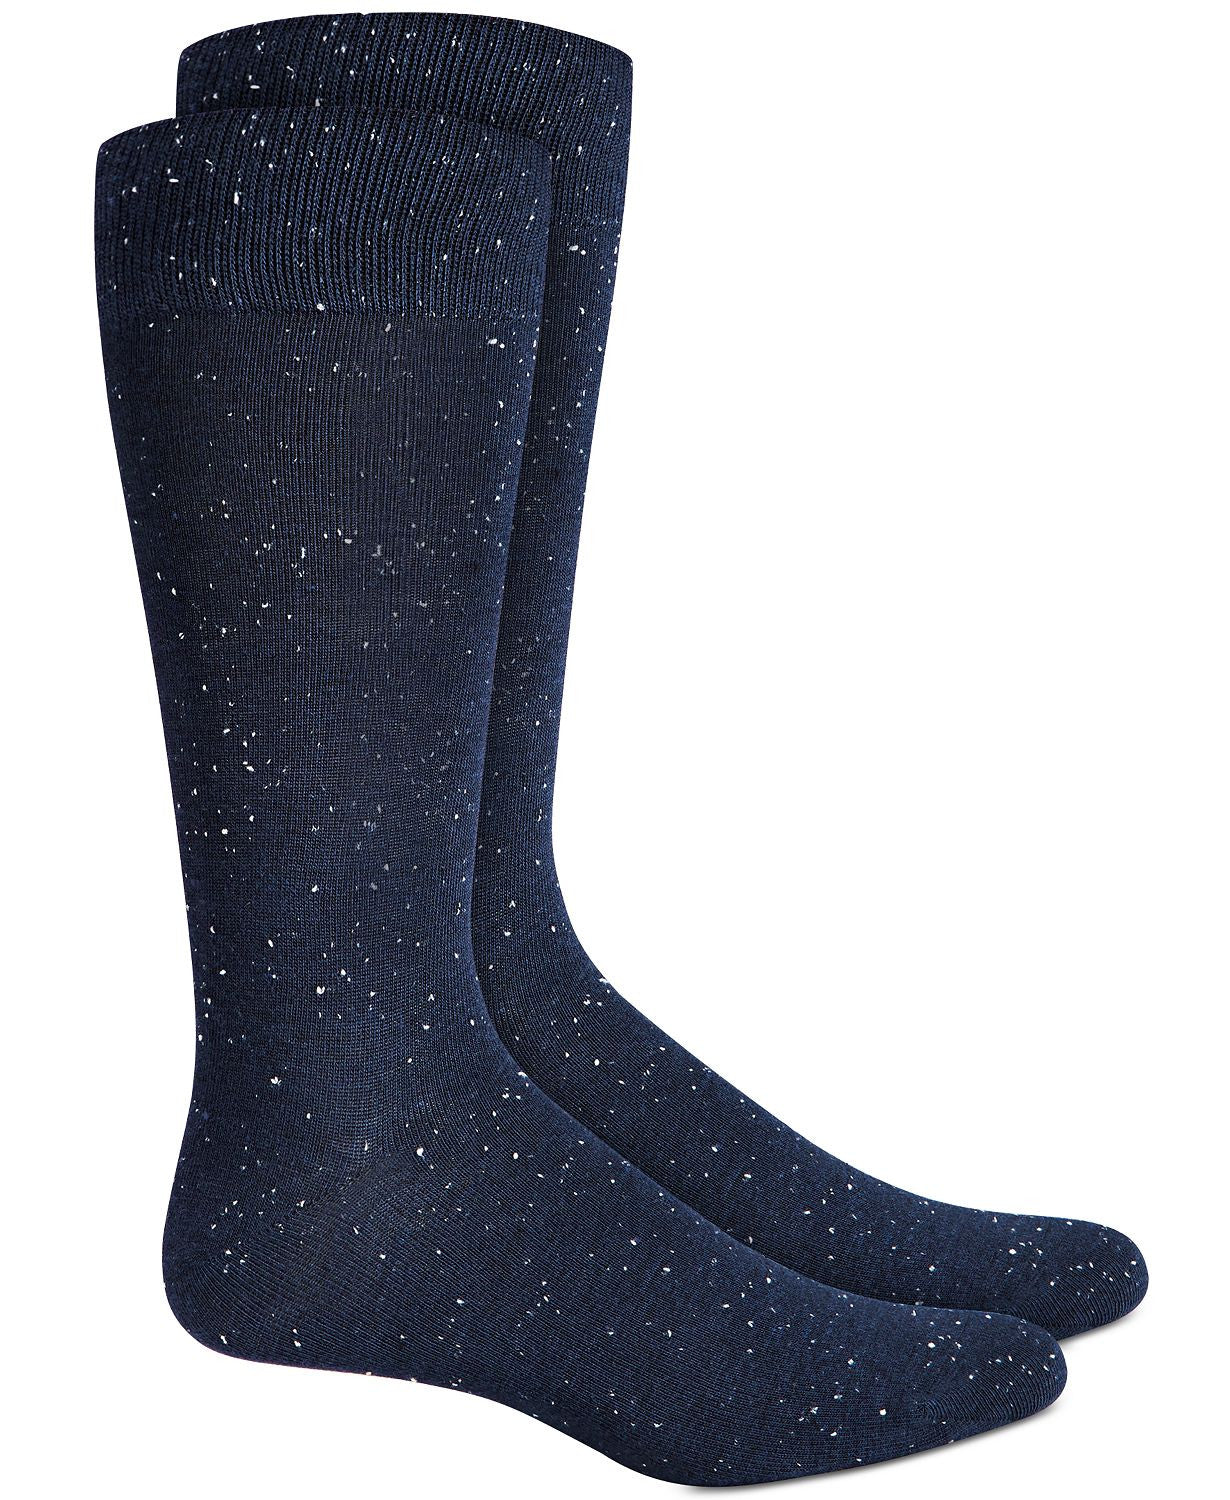 Alfani Speckled Socks Navy